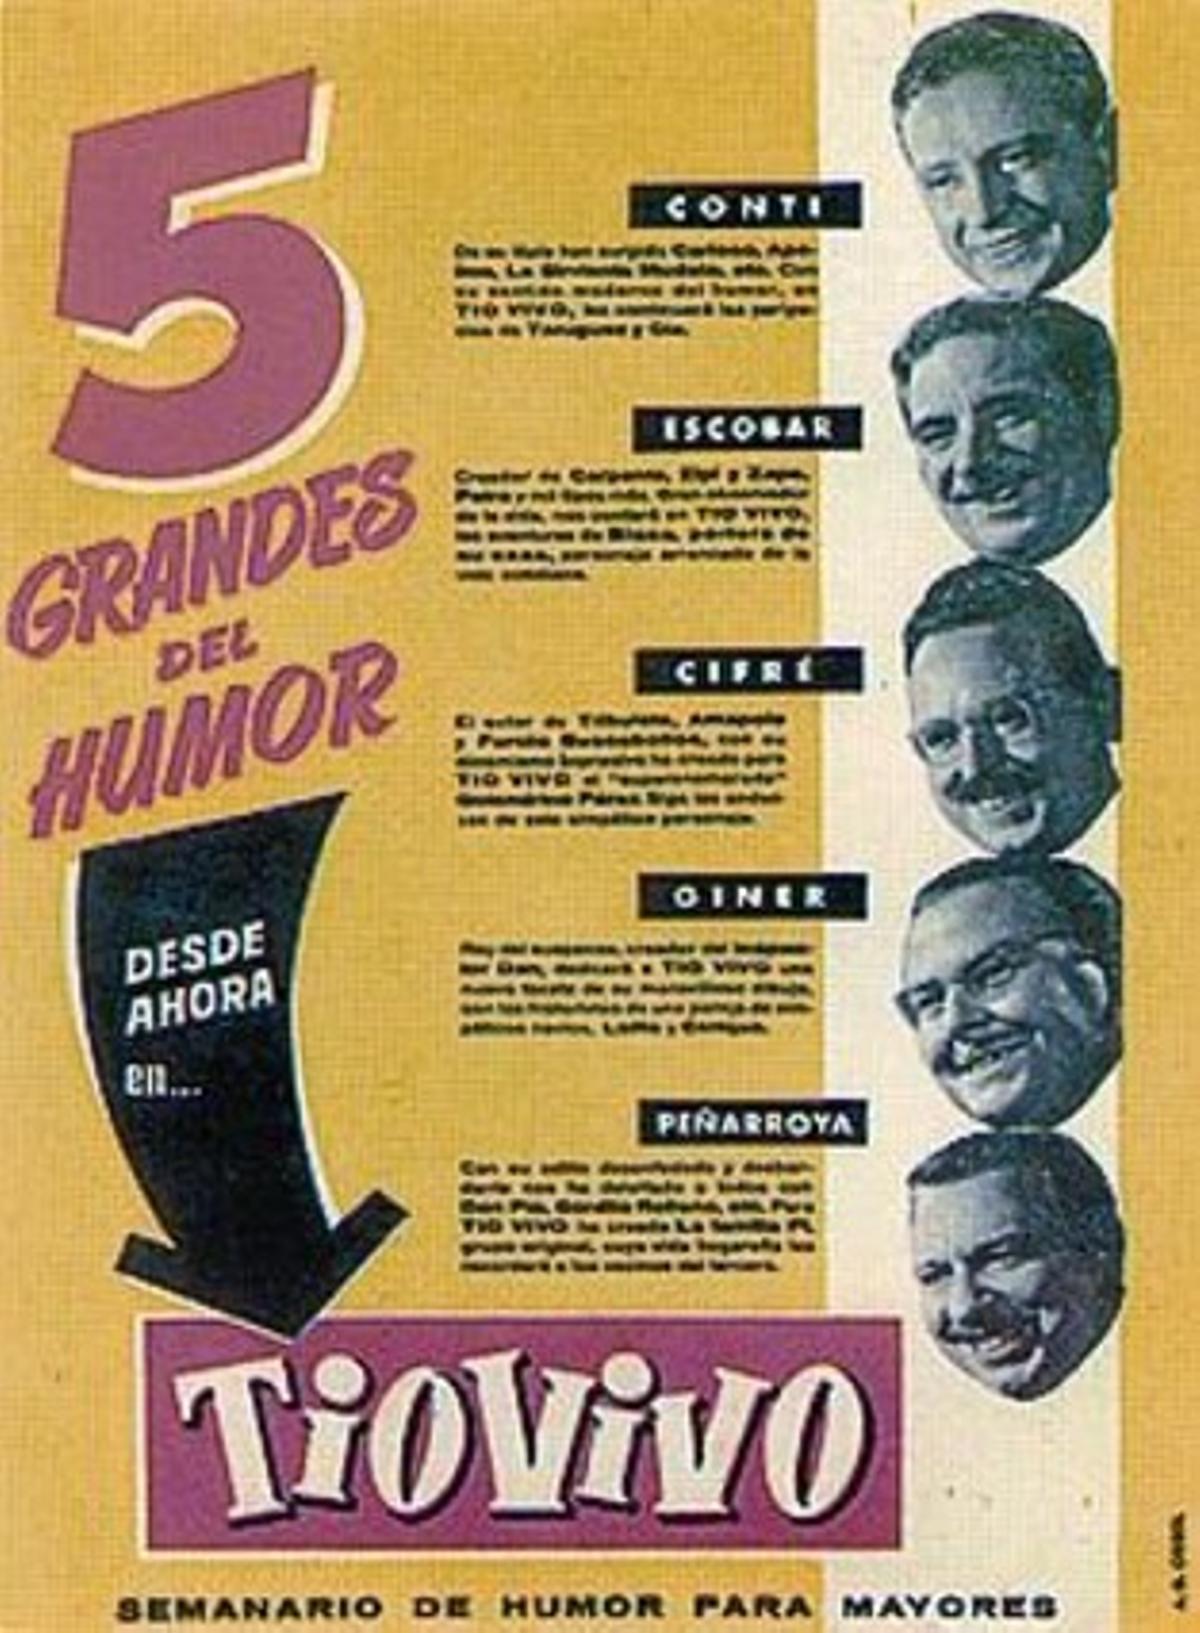 UN MÓNDE VINYETES 3Conti, Peñarroya, Escobar, i Cifré passegen per un carrer de Barcelona (esquerra) a la portada del còmic de Paco Roca (dreta), i celebren el primer número de ’Tío Vivo’ (a dalt). A l’esquerra, el personatge de Víctor Mora amb Harmonia, guionista i traductora de Bruguera. A sota, promoció de la nova revista.